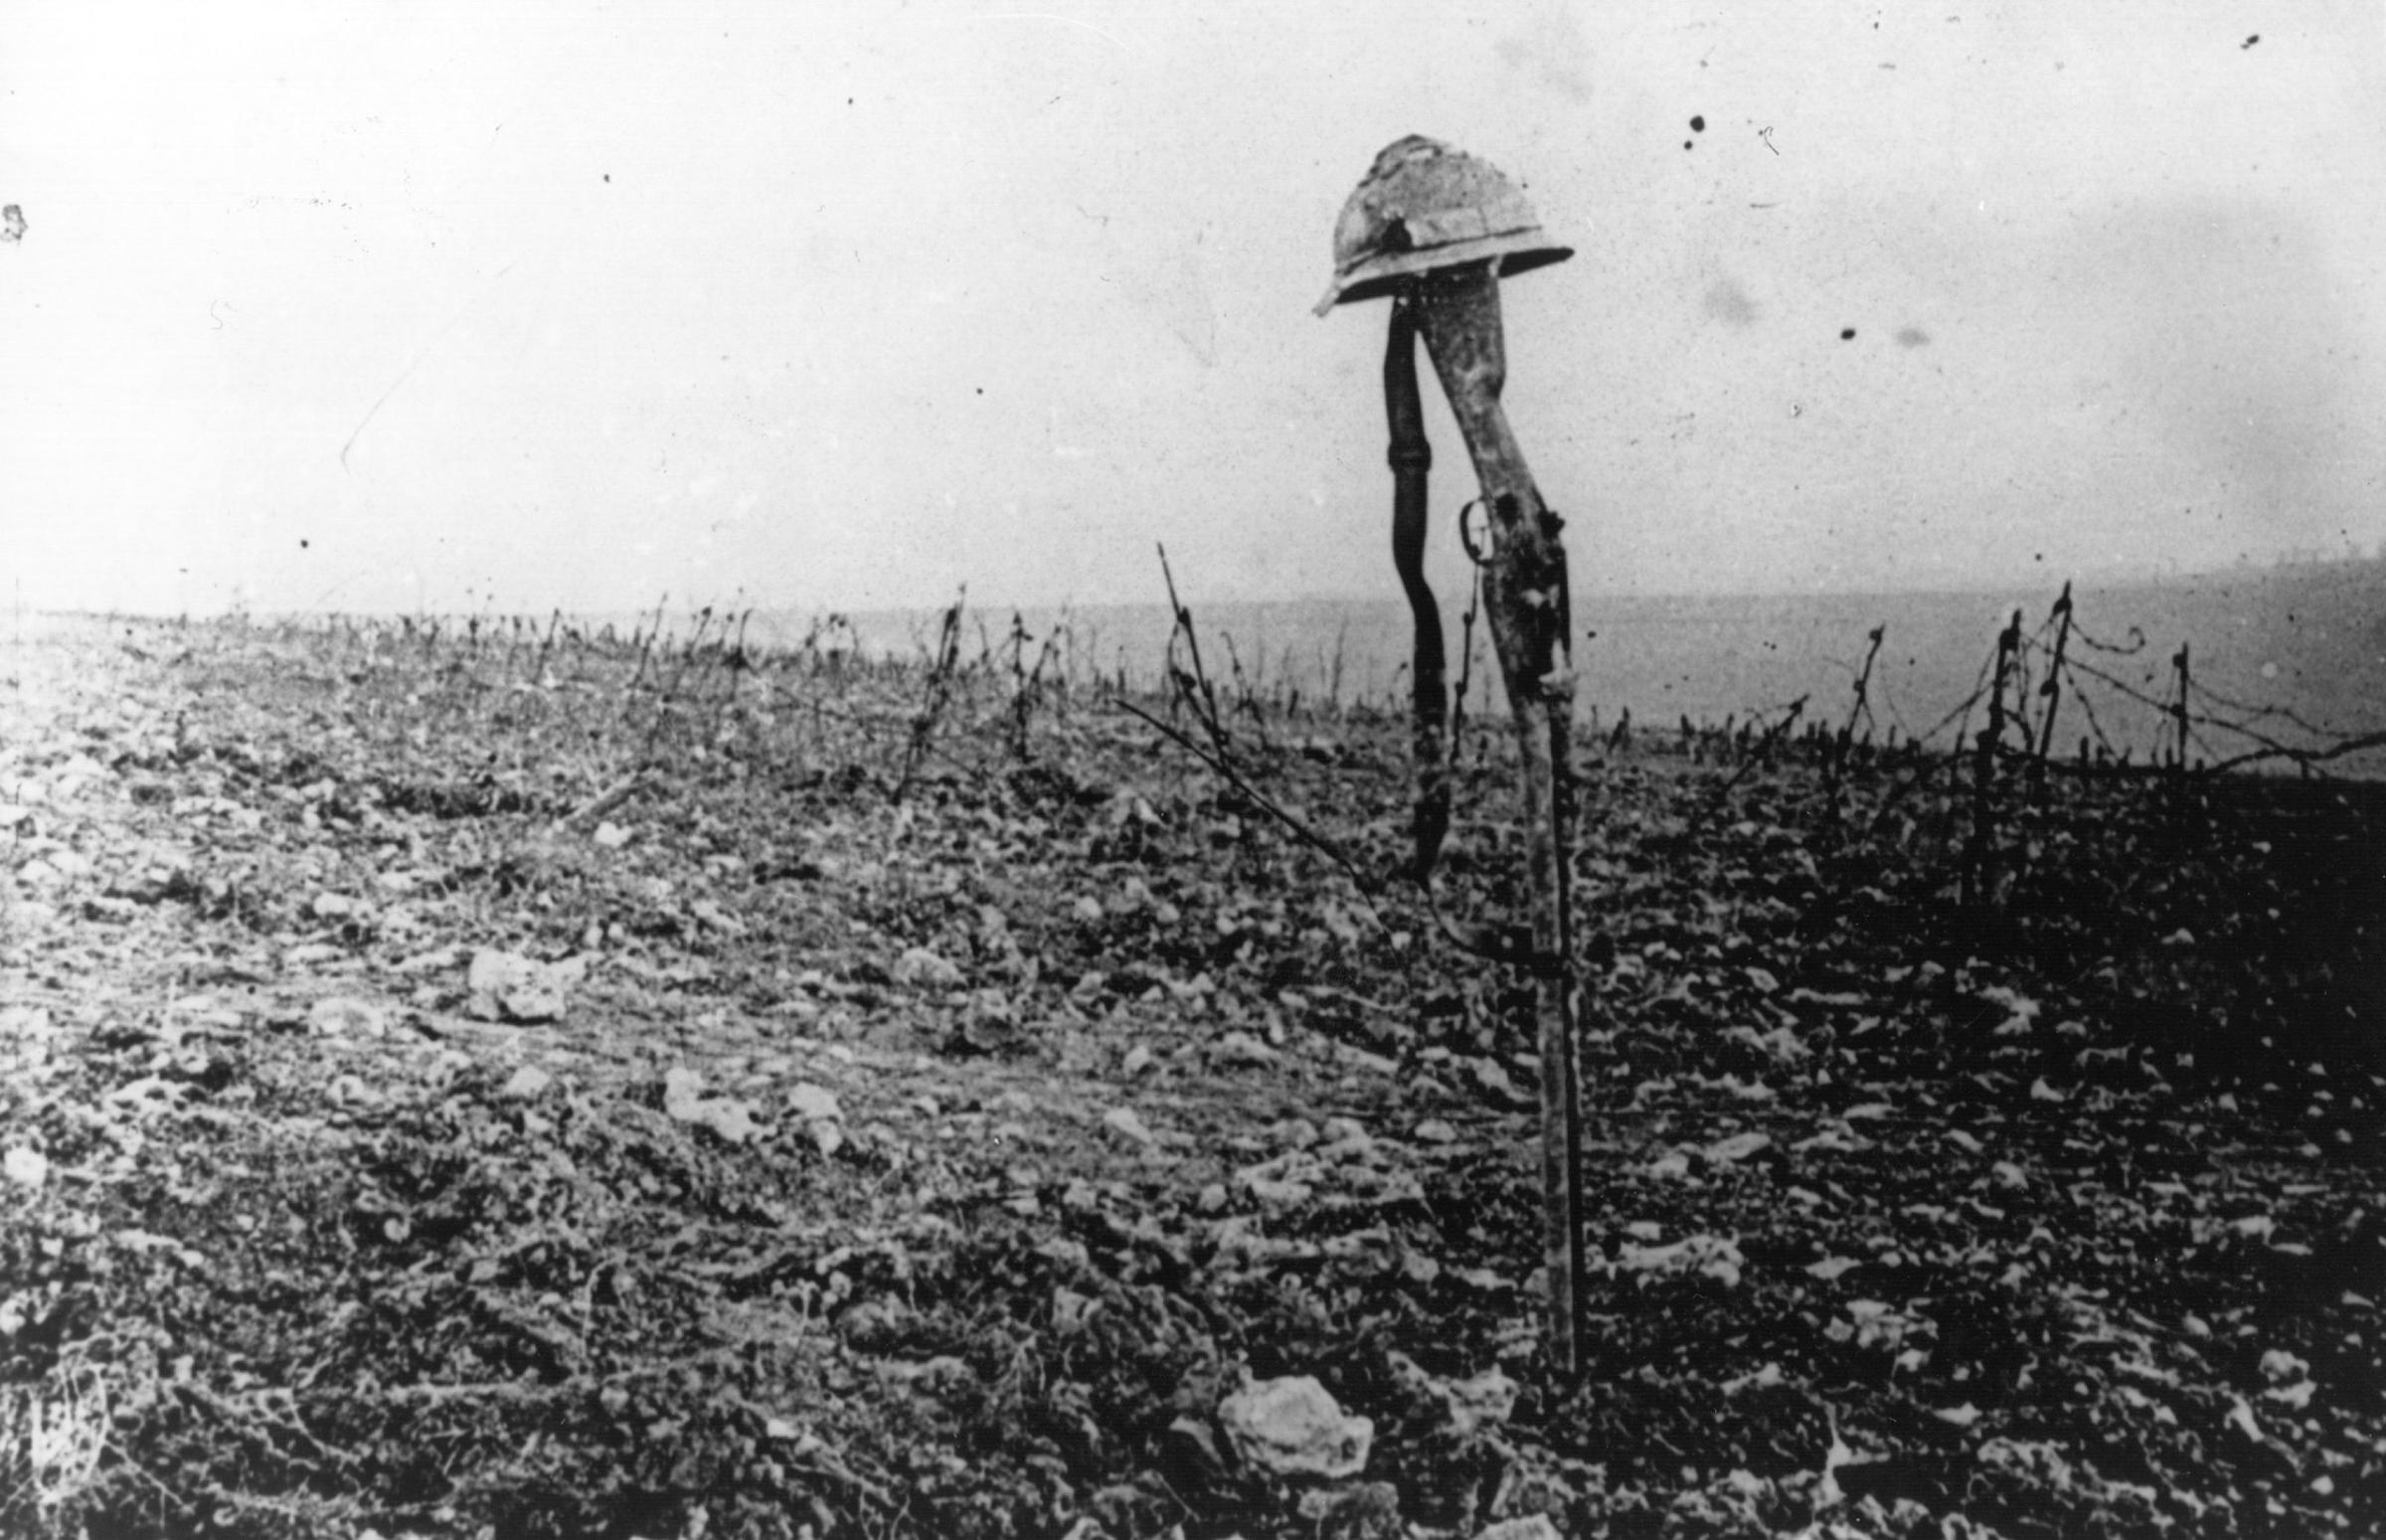 WWI Battle of Verdun in France, 1916.